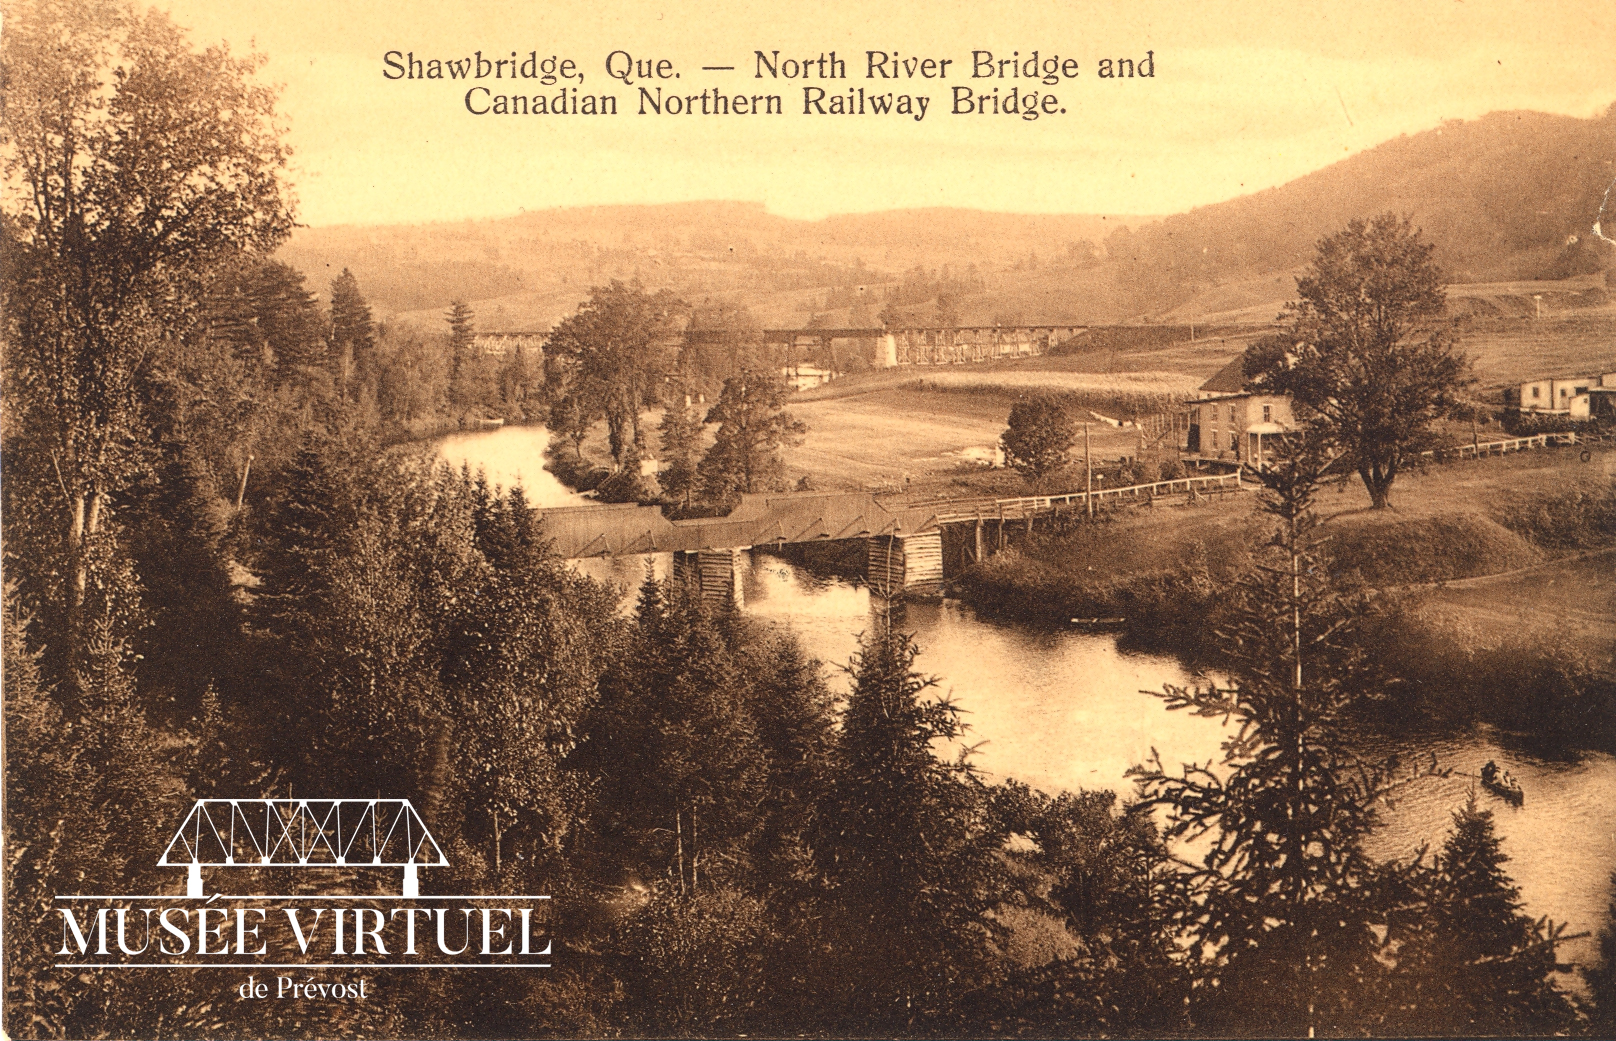 6. Pont Shaw vers 1922, en bois à l'époque. On y a une vue sur le Vieux-Prévost situé à l'Ouest de la rivière du Nord. On y voit aussi le pont du chemin de fer du C.N. à l'arrière-plan - Collection de Benoit Guérin